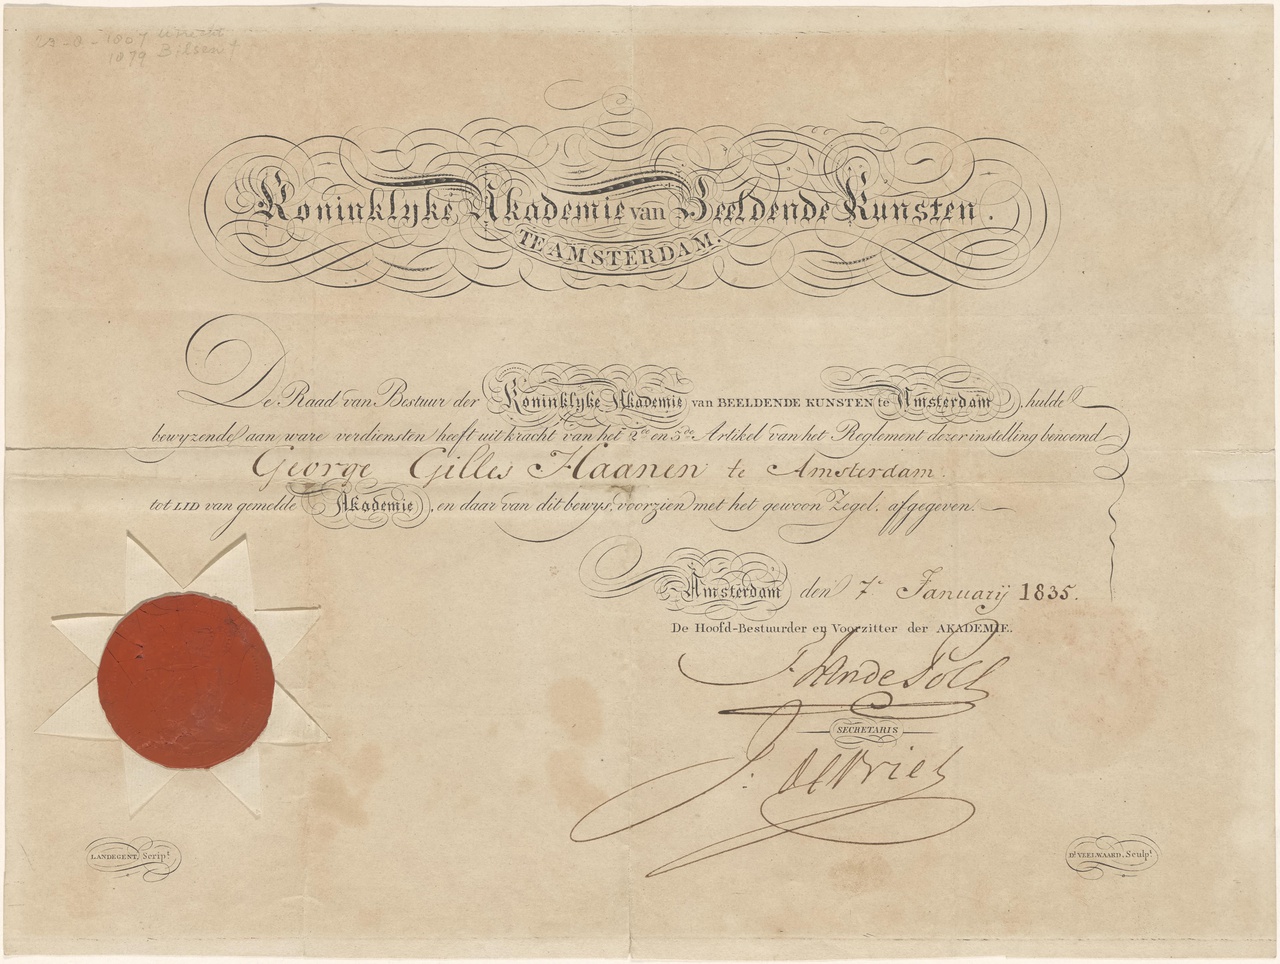 Diploma van George Gillis Haanen (Koninklijke Academie van Beeldende Kunsten Amsterdam)